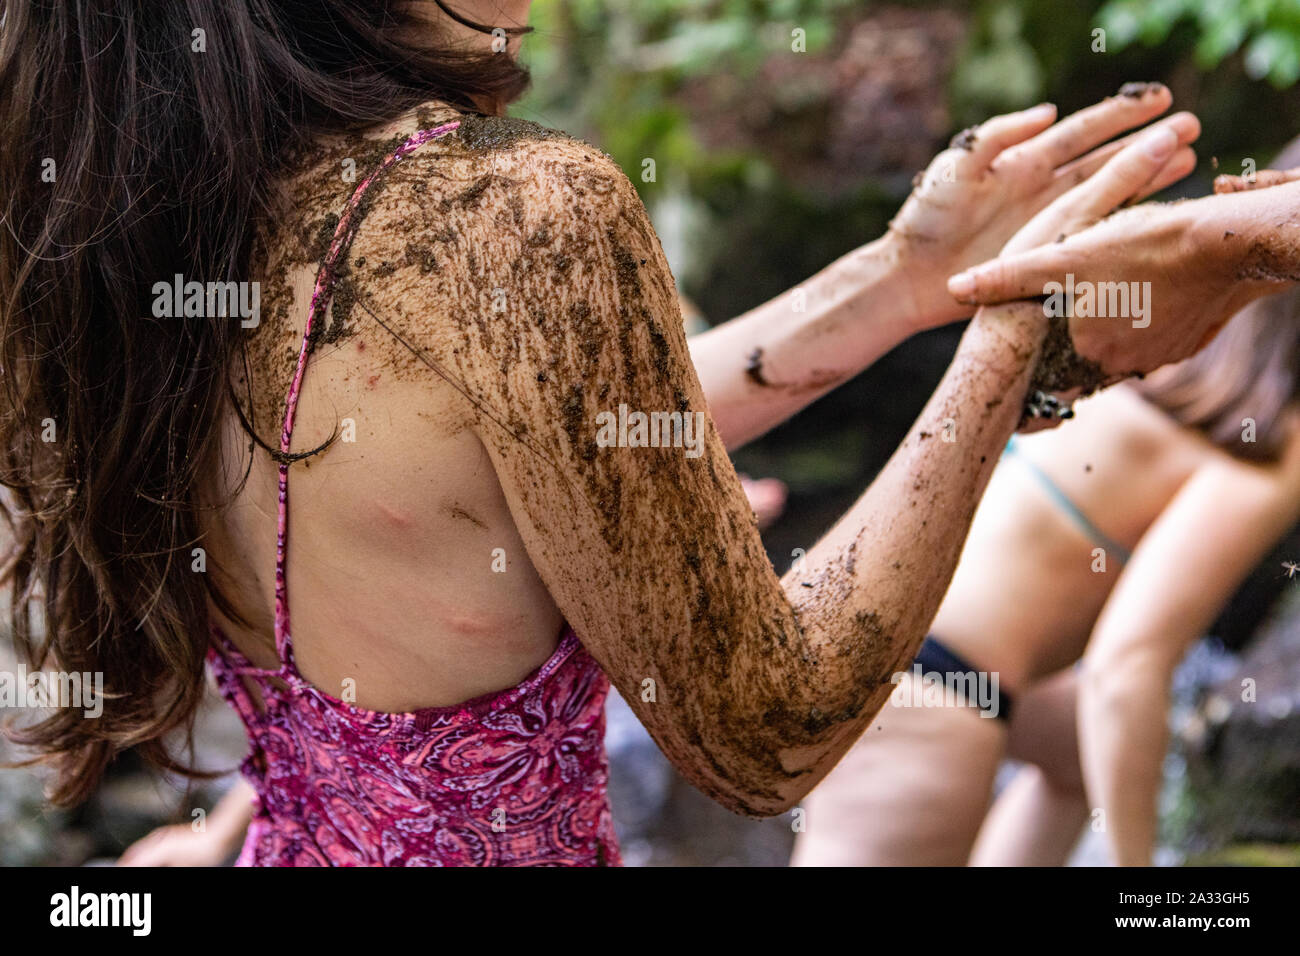 Una vista ravvicinata sulla coperta di fango del braccio di una donna in costume da bagno come essa sperimenta un tradizionale bagno di fango durante un ritiro per celebrare culture indigene. Foto Stock